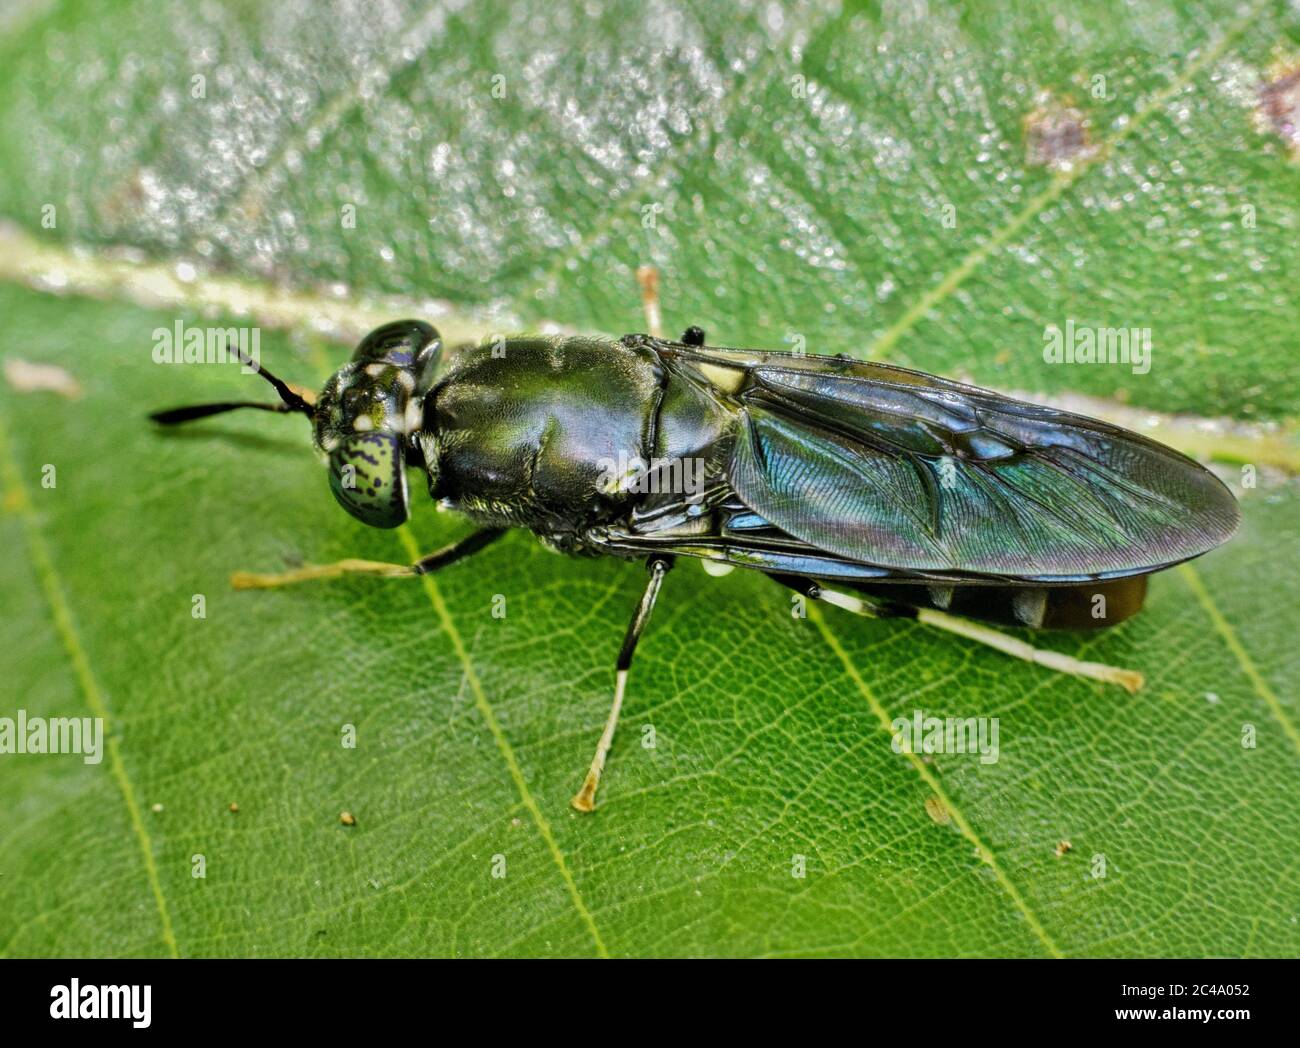 Black Soldier vola riposando su una foglia verde a Houston, Texas. Specie diffuse trovate in tutto il mondo sono considerati insetti benefici. Foto Stock